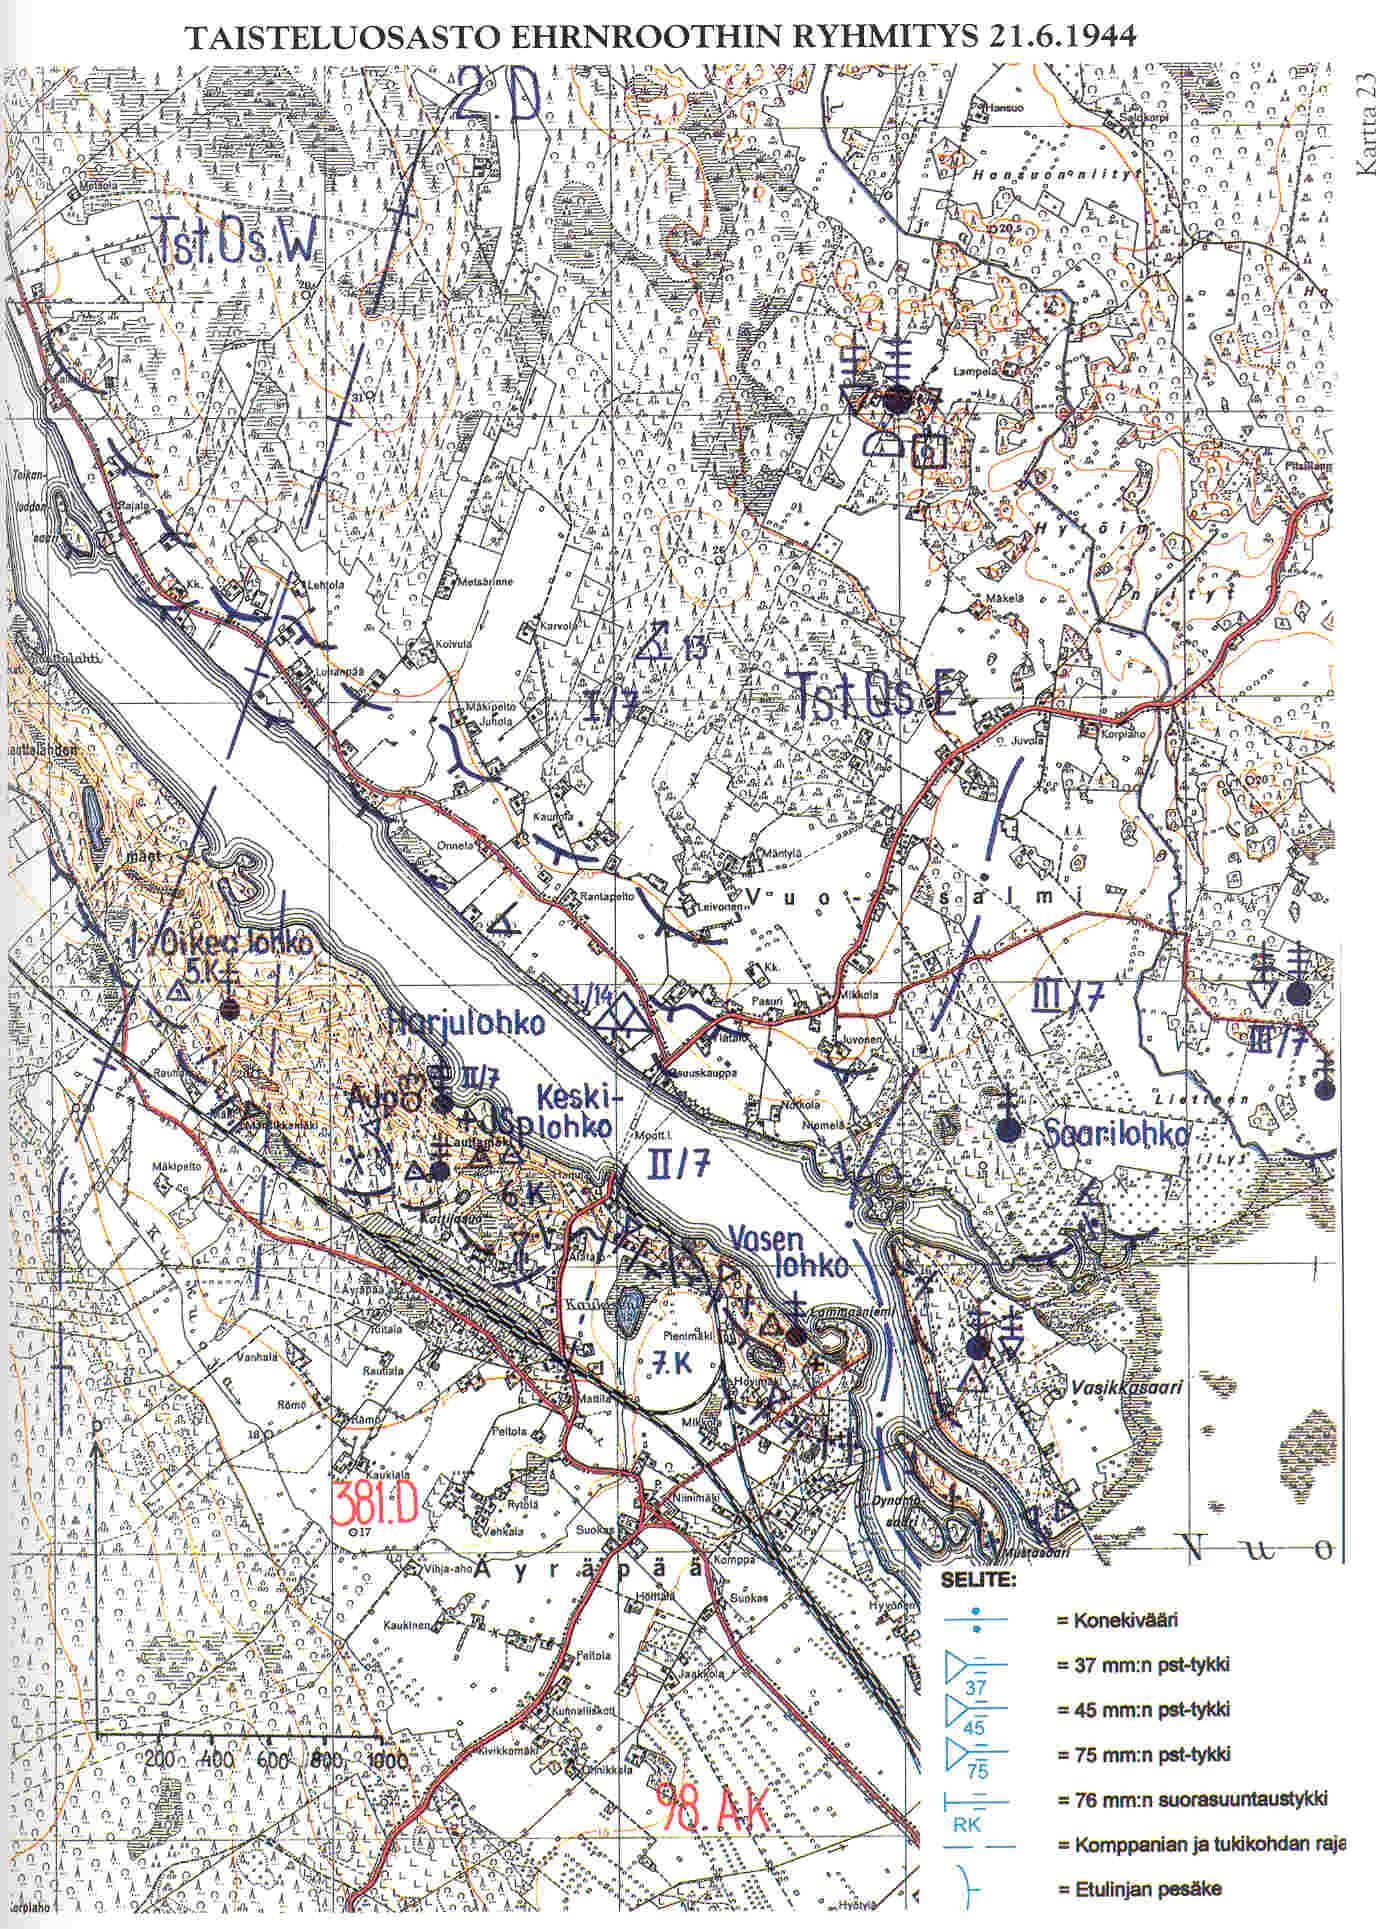 Taisteluosasto Ehrnroothin ryhmitys 21.6.1944